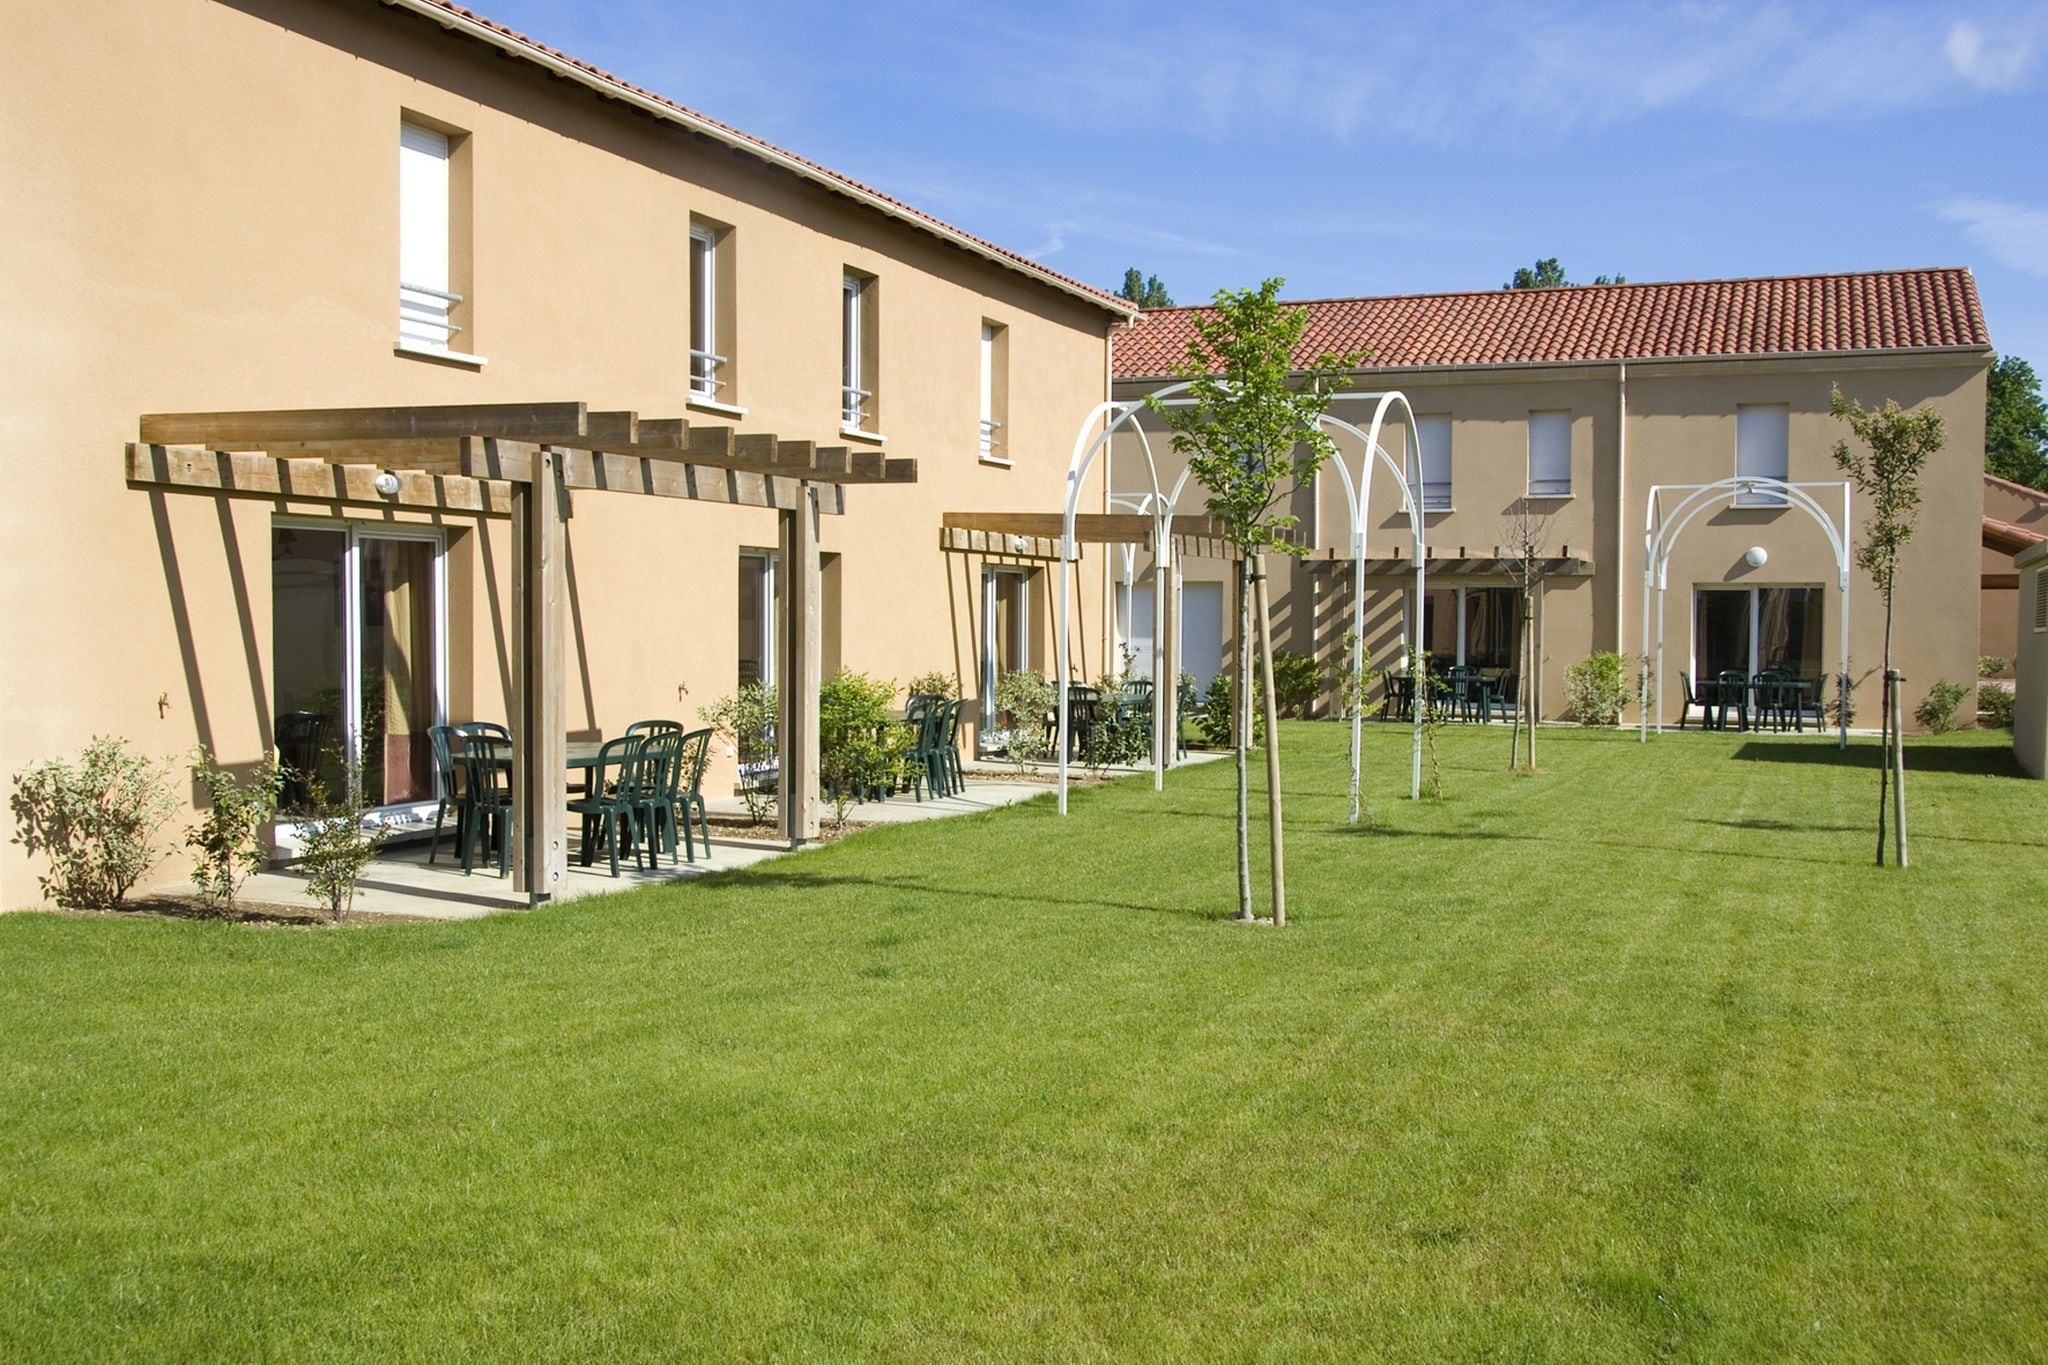 Bel appartement dans une ville pittoresque de la Dordogne